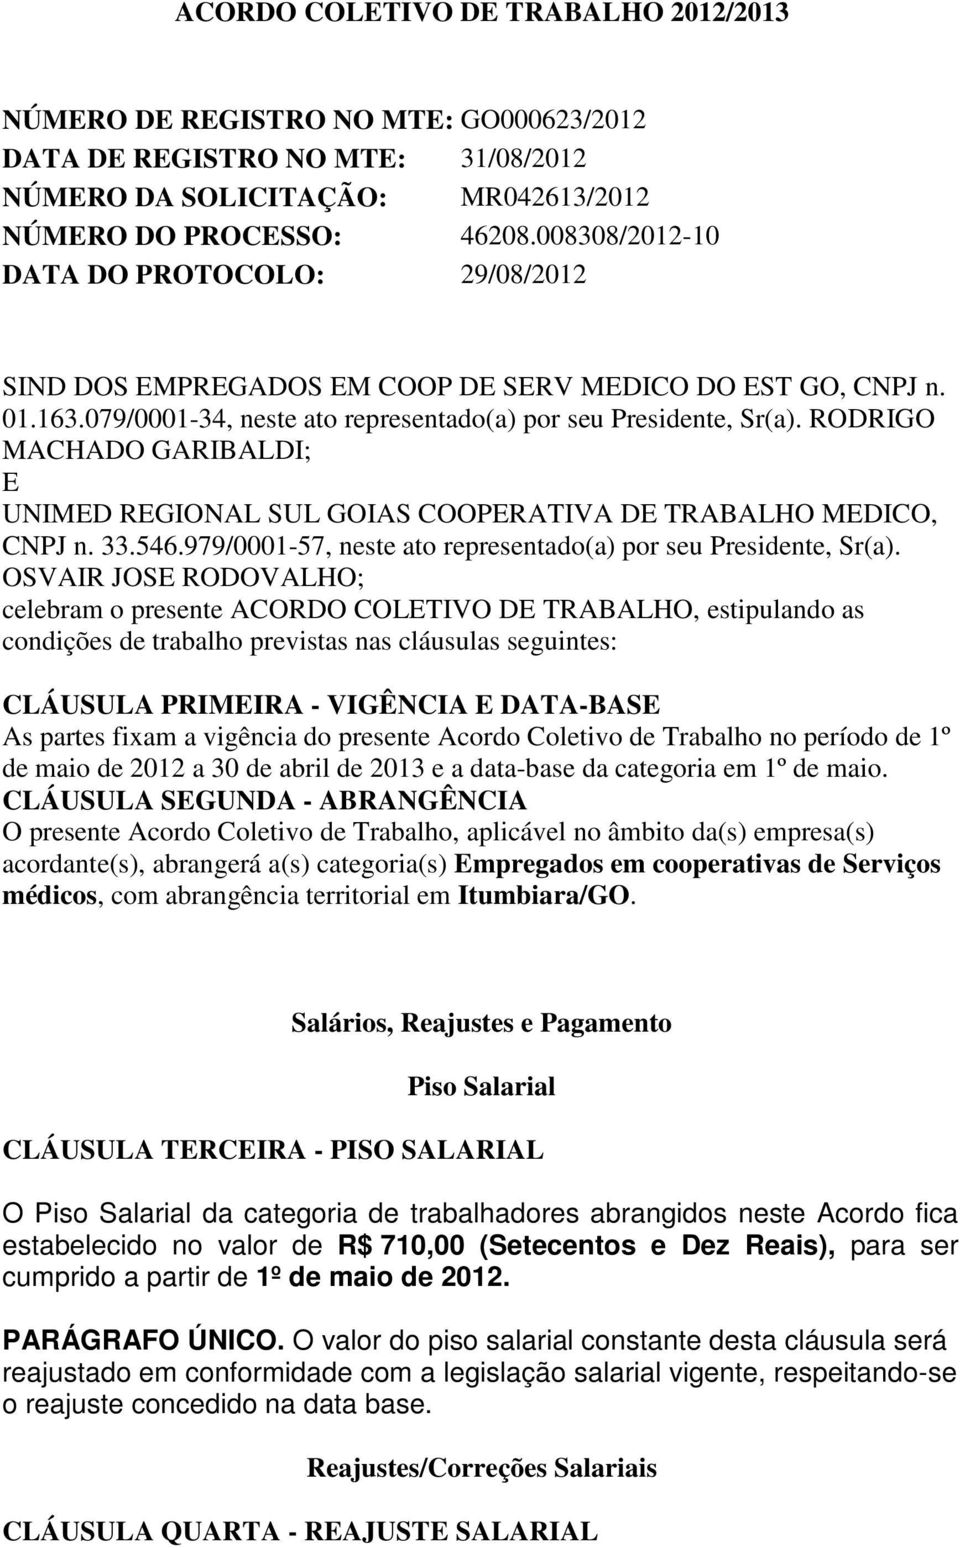 RODRIGO MACHADO GARIBALDI; E UNIMED REGIONAL SUL GOIAS COOPERATIVA DE TRABALHO MEDICO, CNPJ n. 33.546.979/0001-57, neste ato representado(a) por seu Presidente, Sr(a).